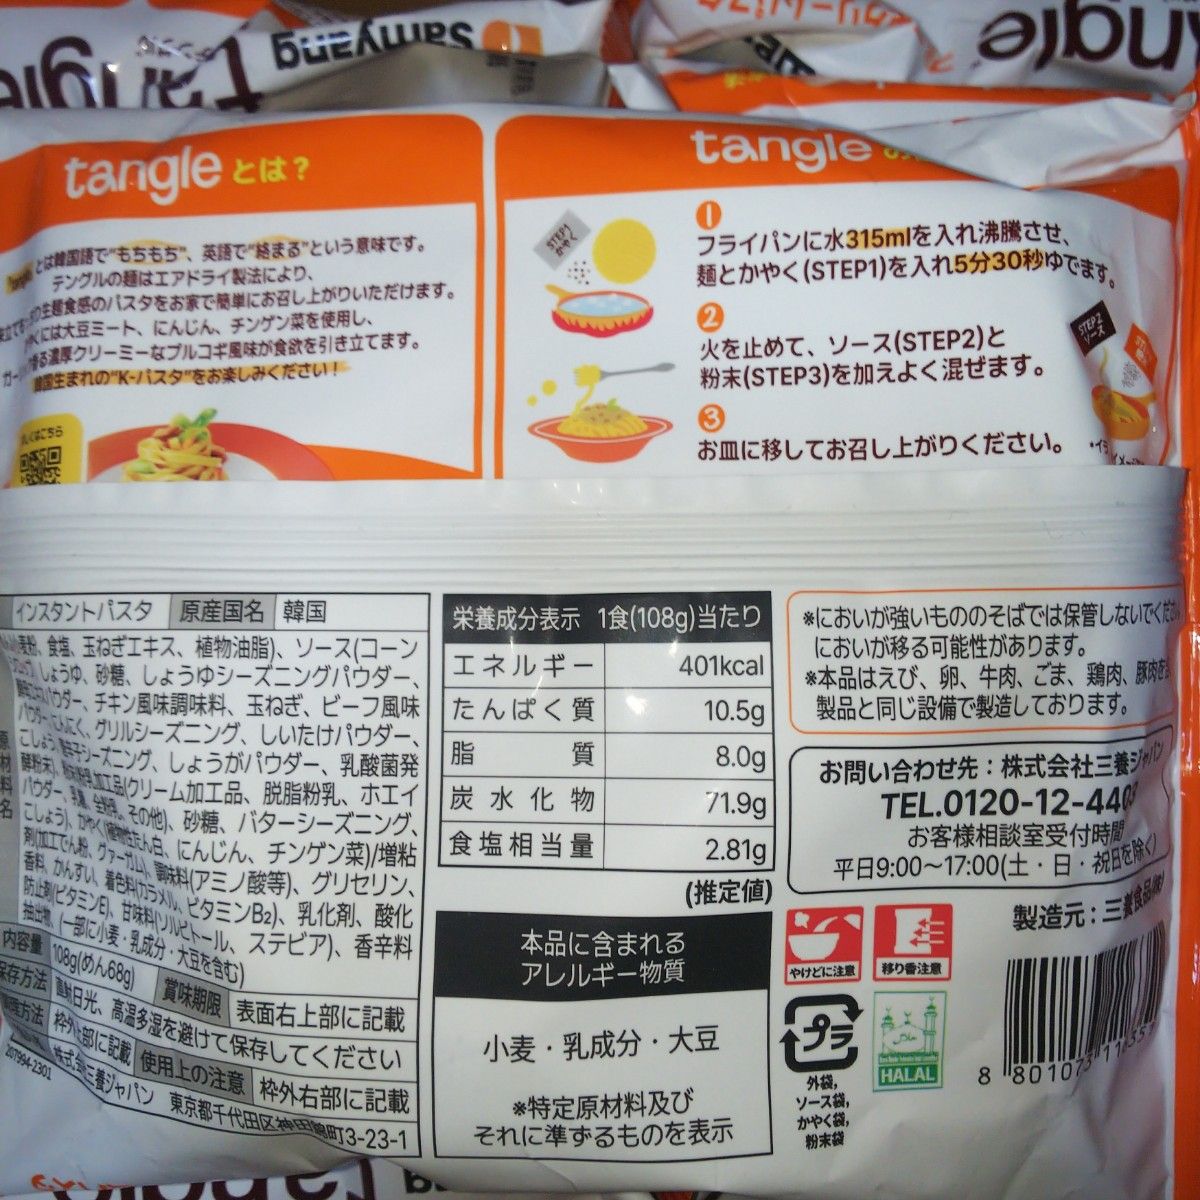 14食(内4食分は無料) 三養食品ジャパン テングル プルコギクリームパスタ袋麺